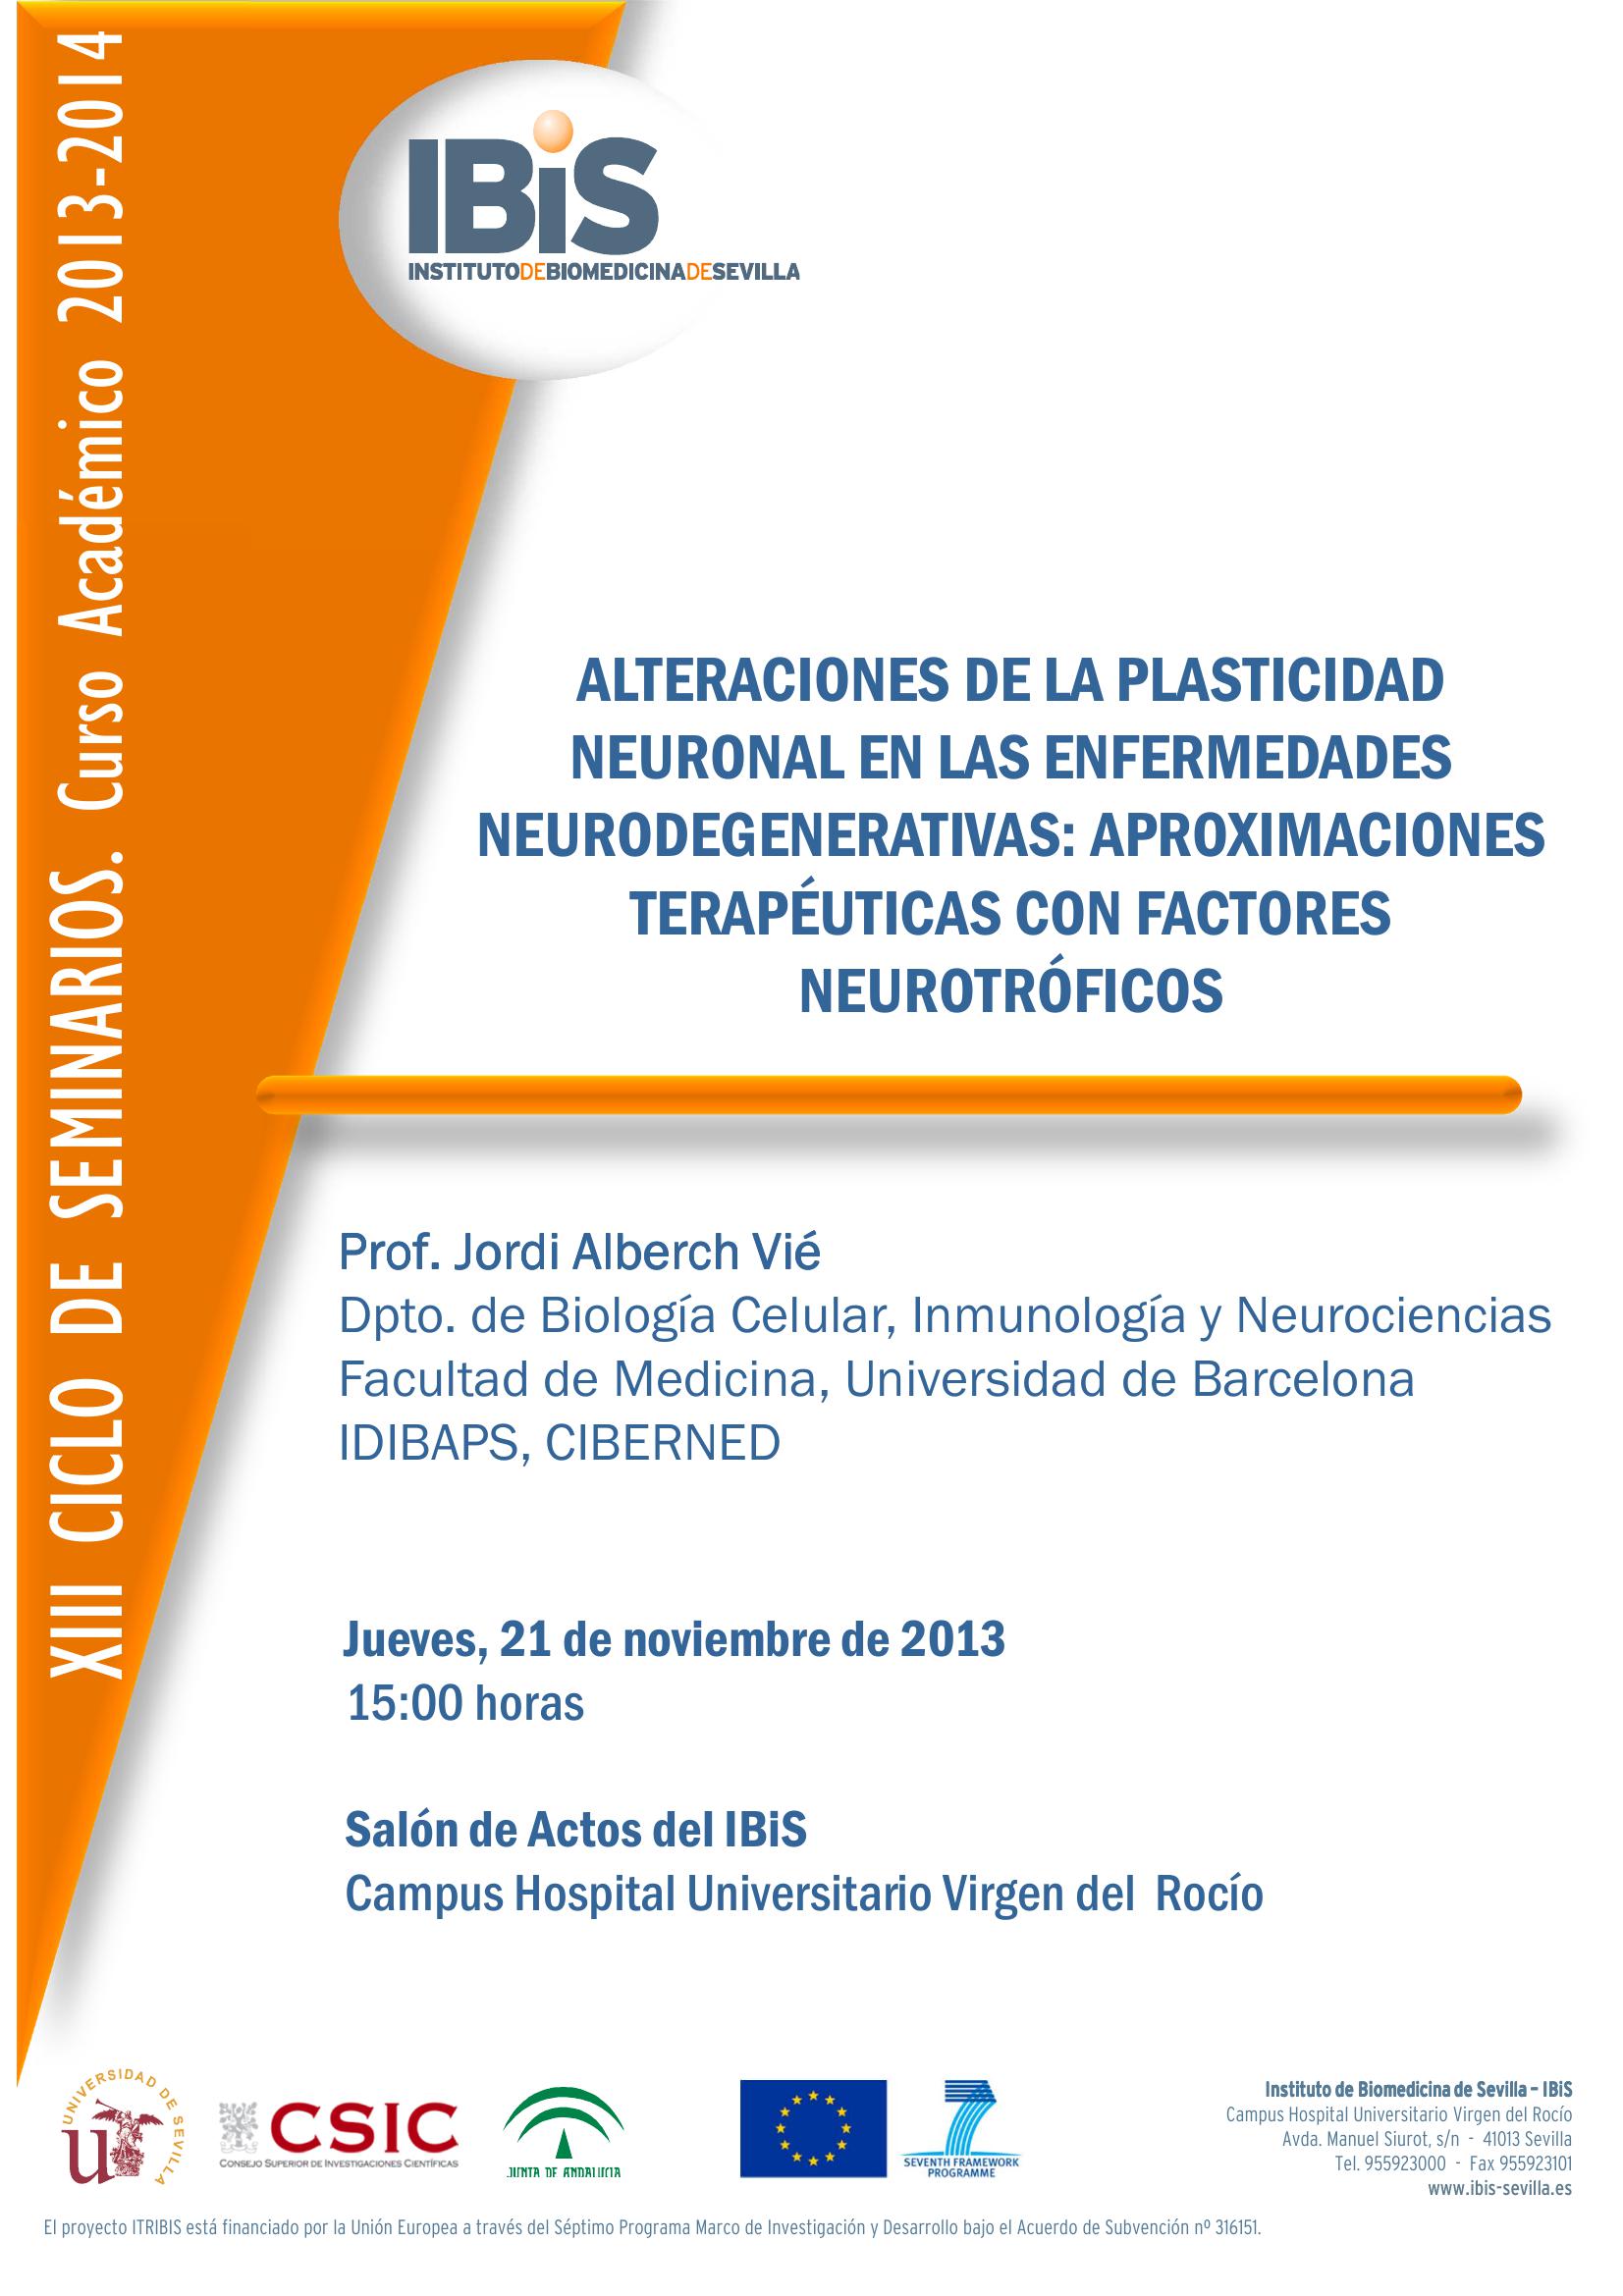 Poster: Alteraciones de la plasticidad neuronal en las enfermedades neurodegenerativas: Aproximaciones terapéuticas con factores neurotróficos